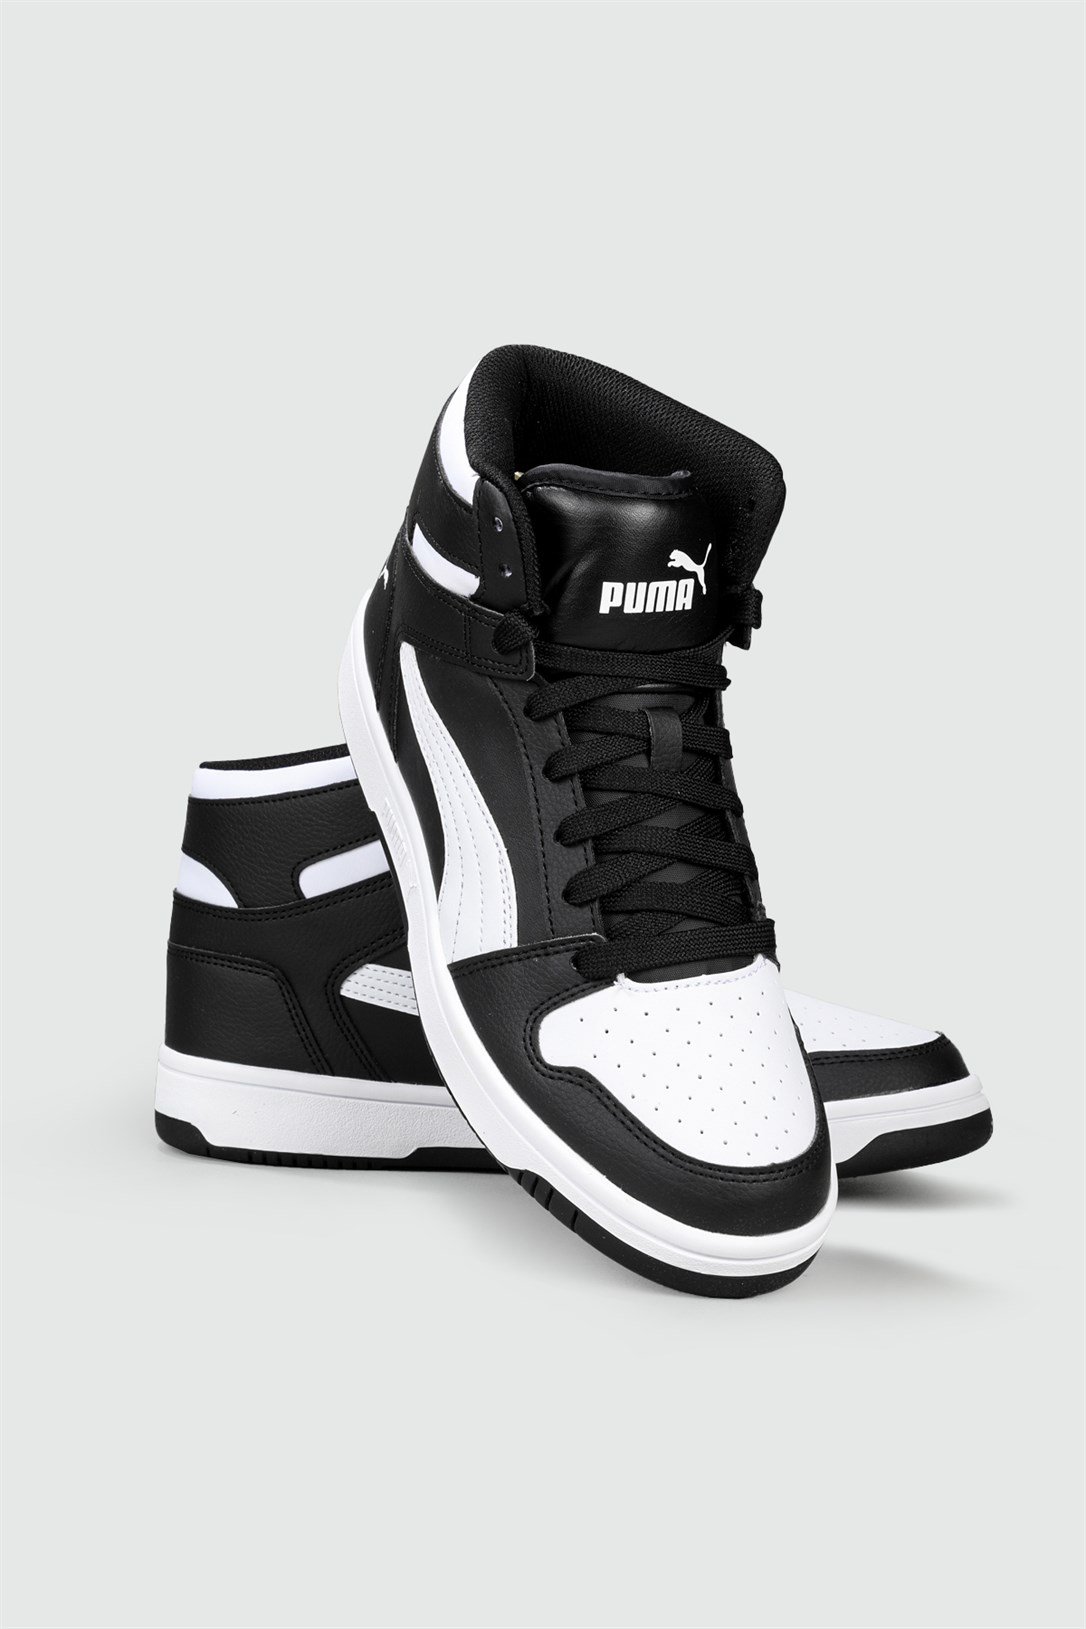 Puma Bilekten Boğazlı Basket Siyah Beyaz Erkek Spor Ayakkabı 369573-01 |  Ayakkabı City